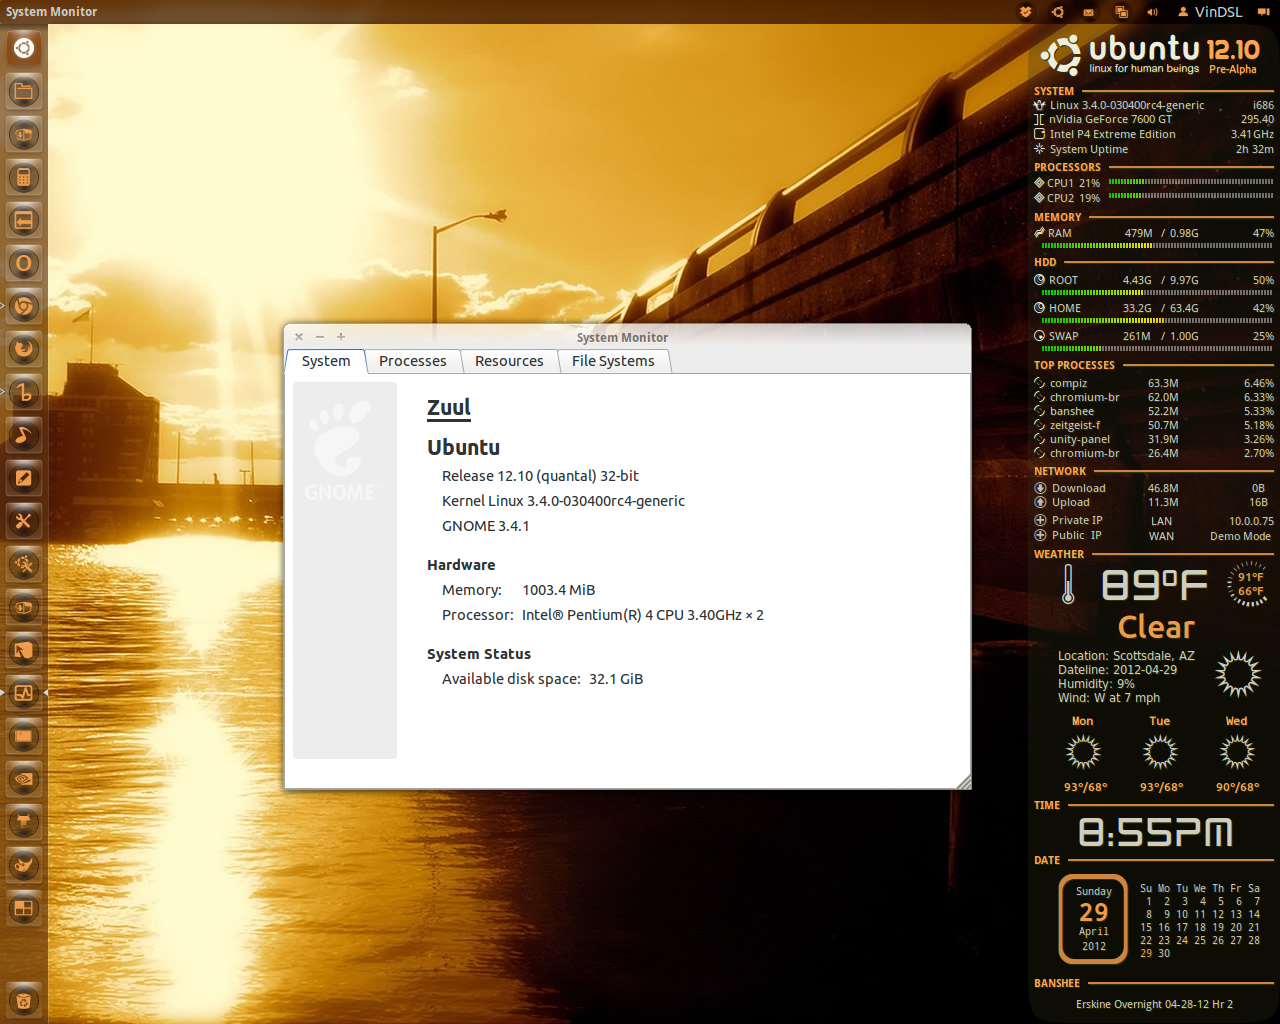 vindsl-desktop-29-apr-2012-1.png